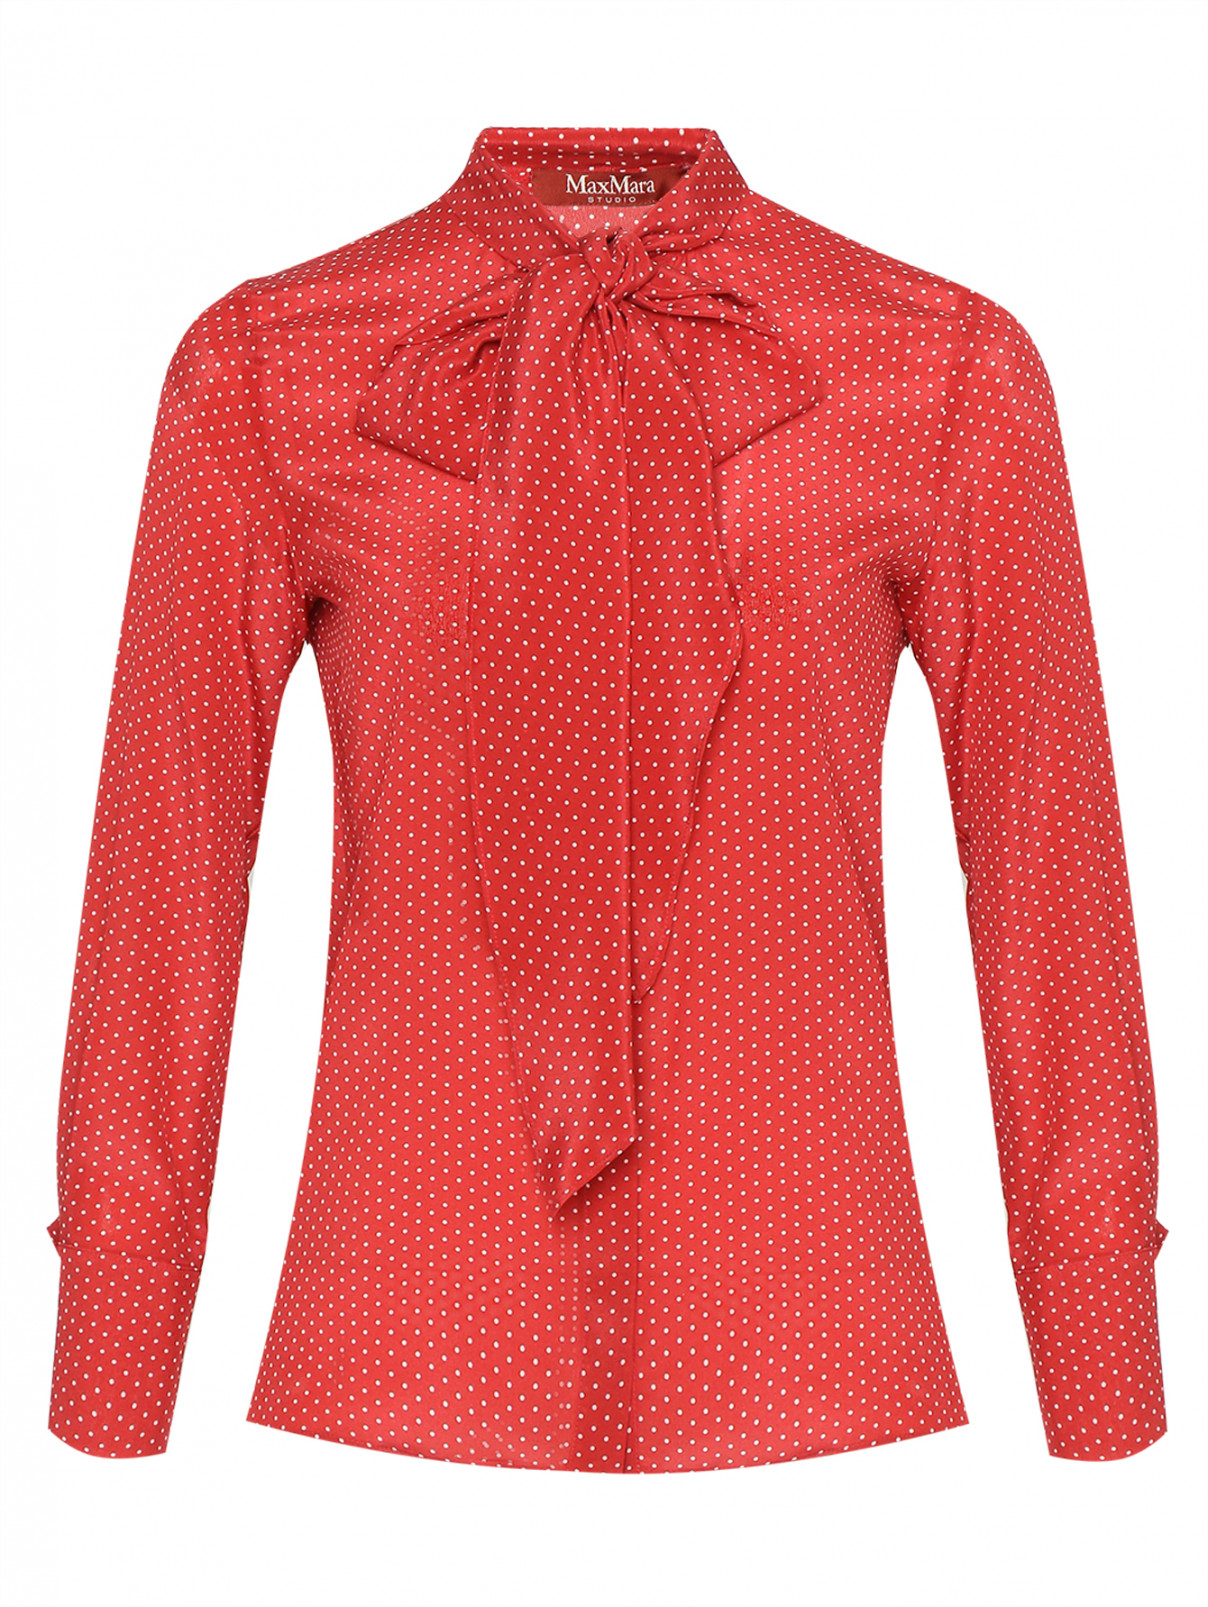 Блуза из шёлка с узором Max Mara  –  Общий вид  – Цвет:  Красный